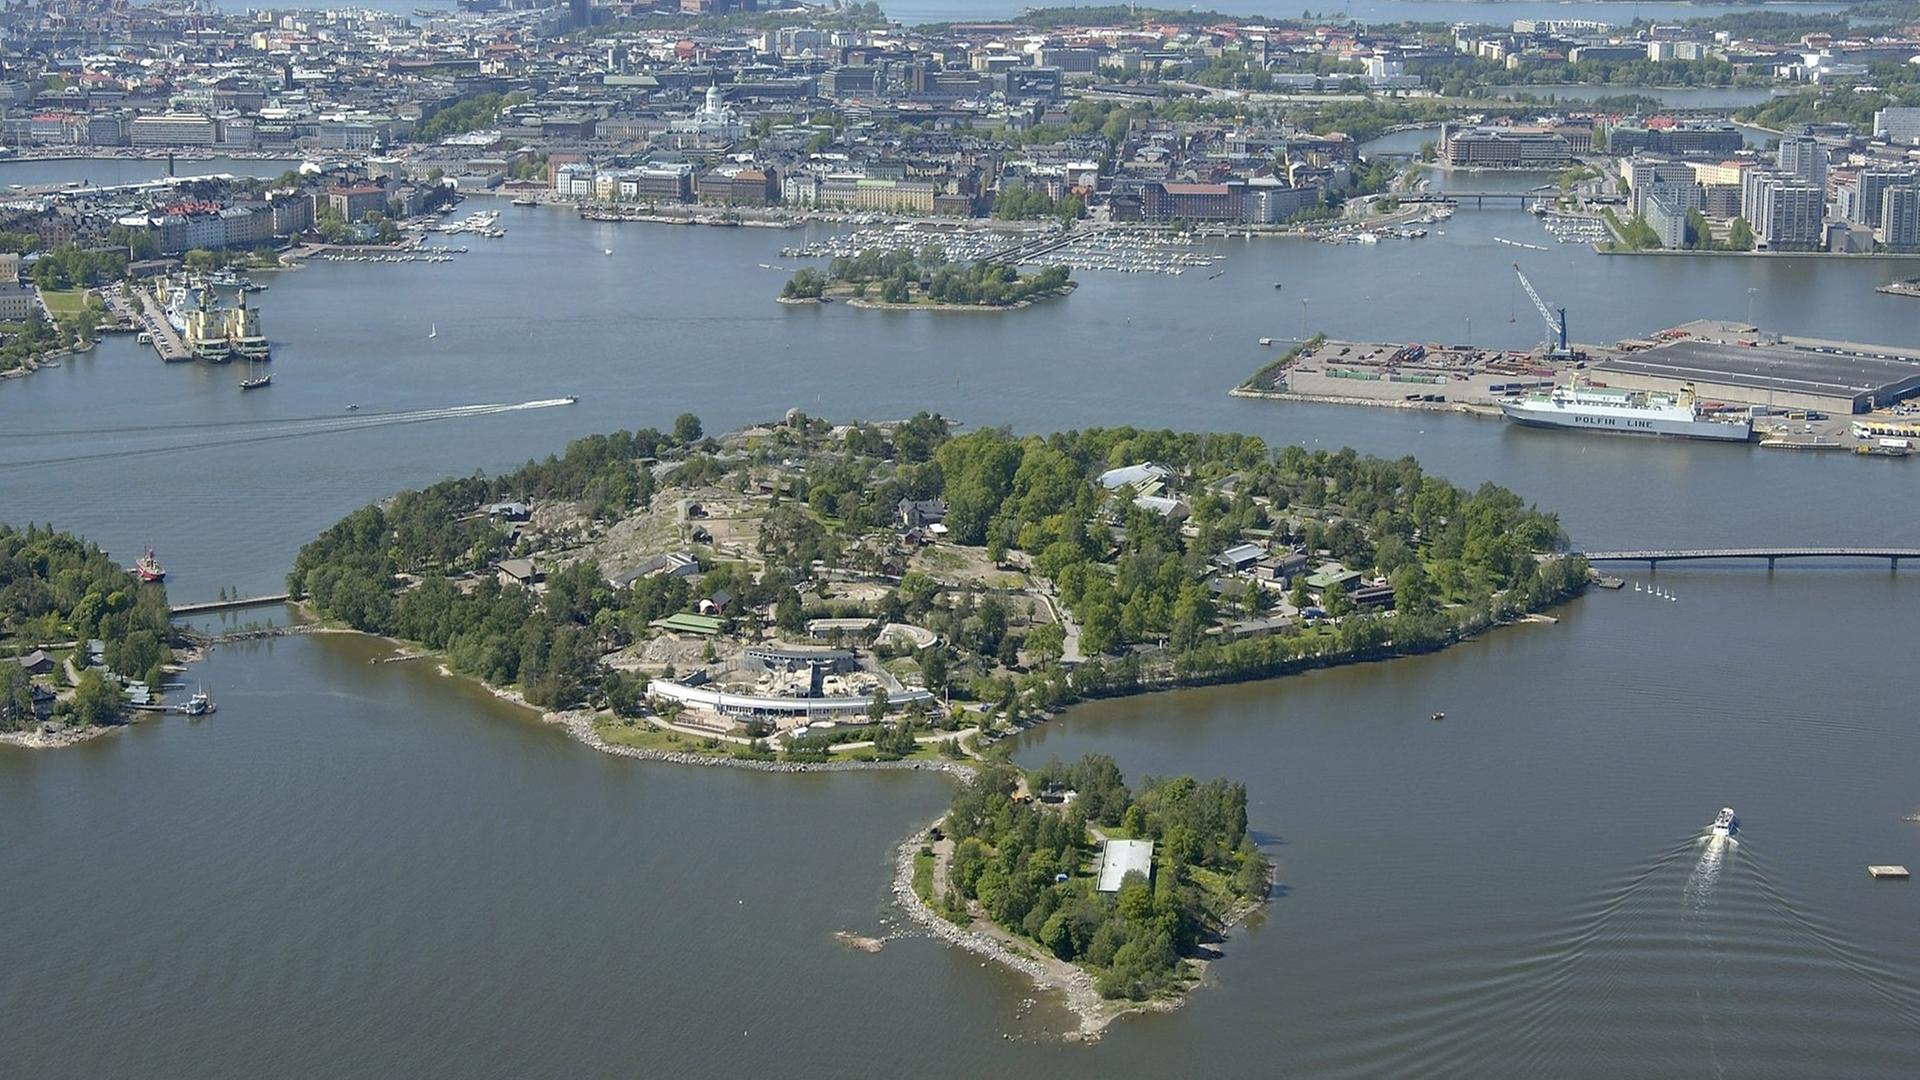 Blick aus der Luft auf den Zoo der finnischen Hauptstadt Helsinki, der auf der Insel Korkeasaari gelegen ist, aufgenommen am 03.06.2004.